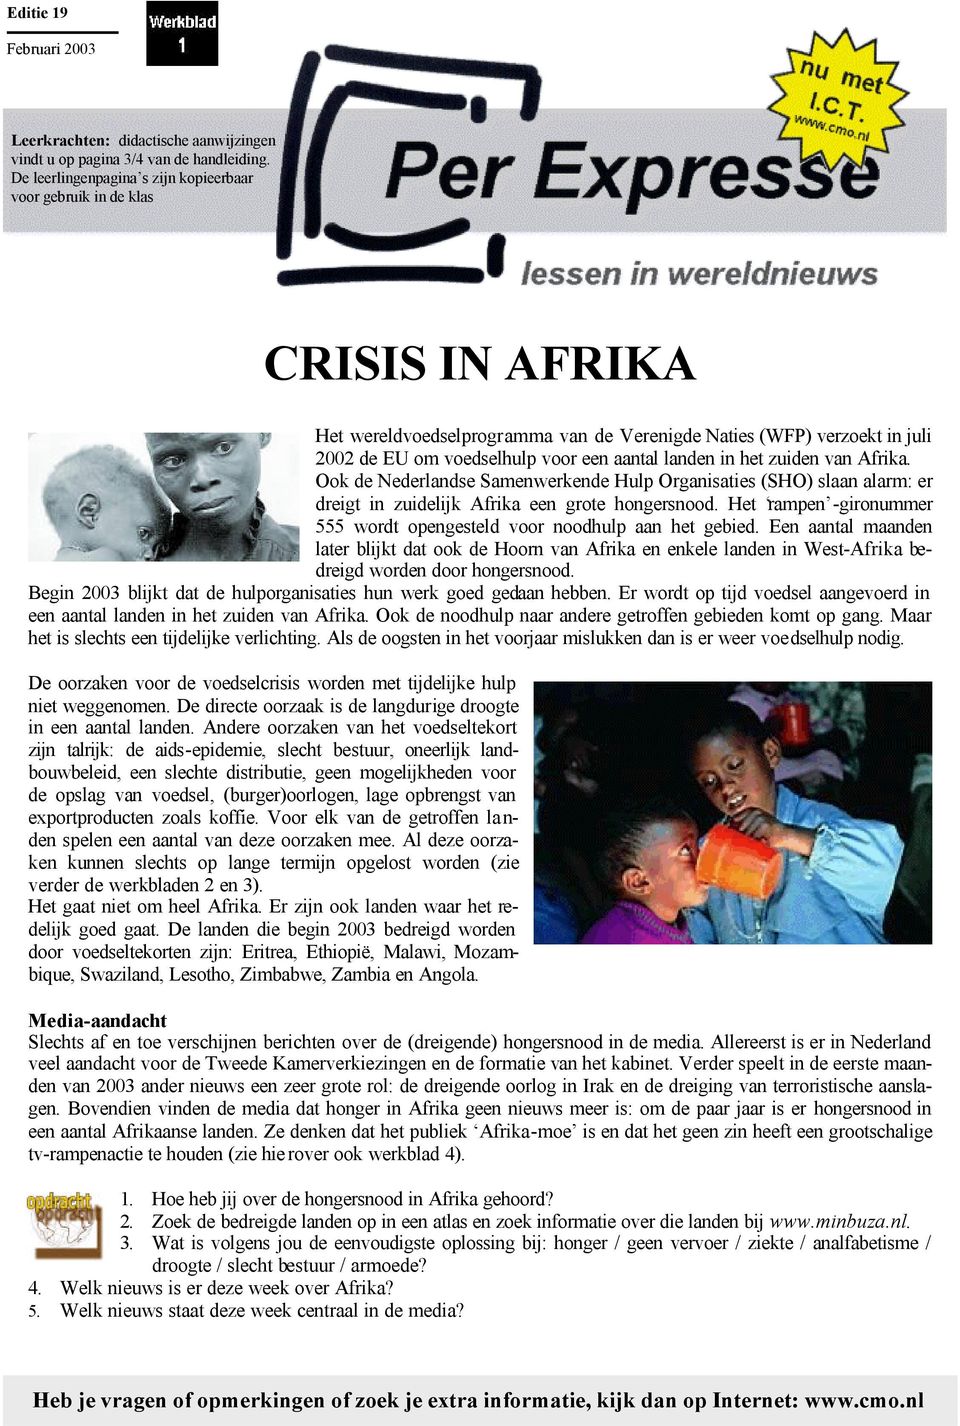 landen in het zuiden van Afrika. Ook de Nederlandse Samenwerkende Hulp Organisaties (SHO) slaan alarm: er dreigt in zuidelijk Afrika een grote hongersnood.